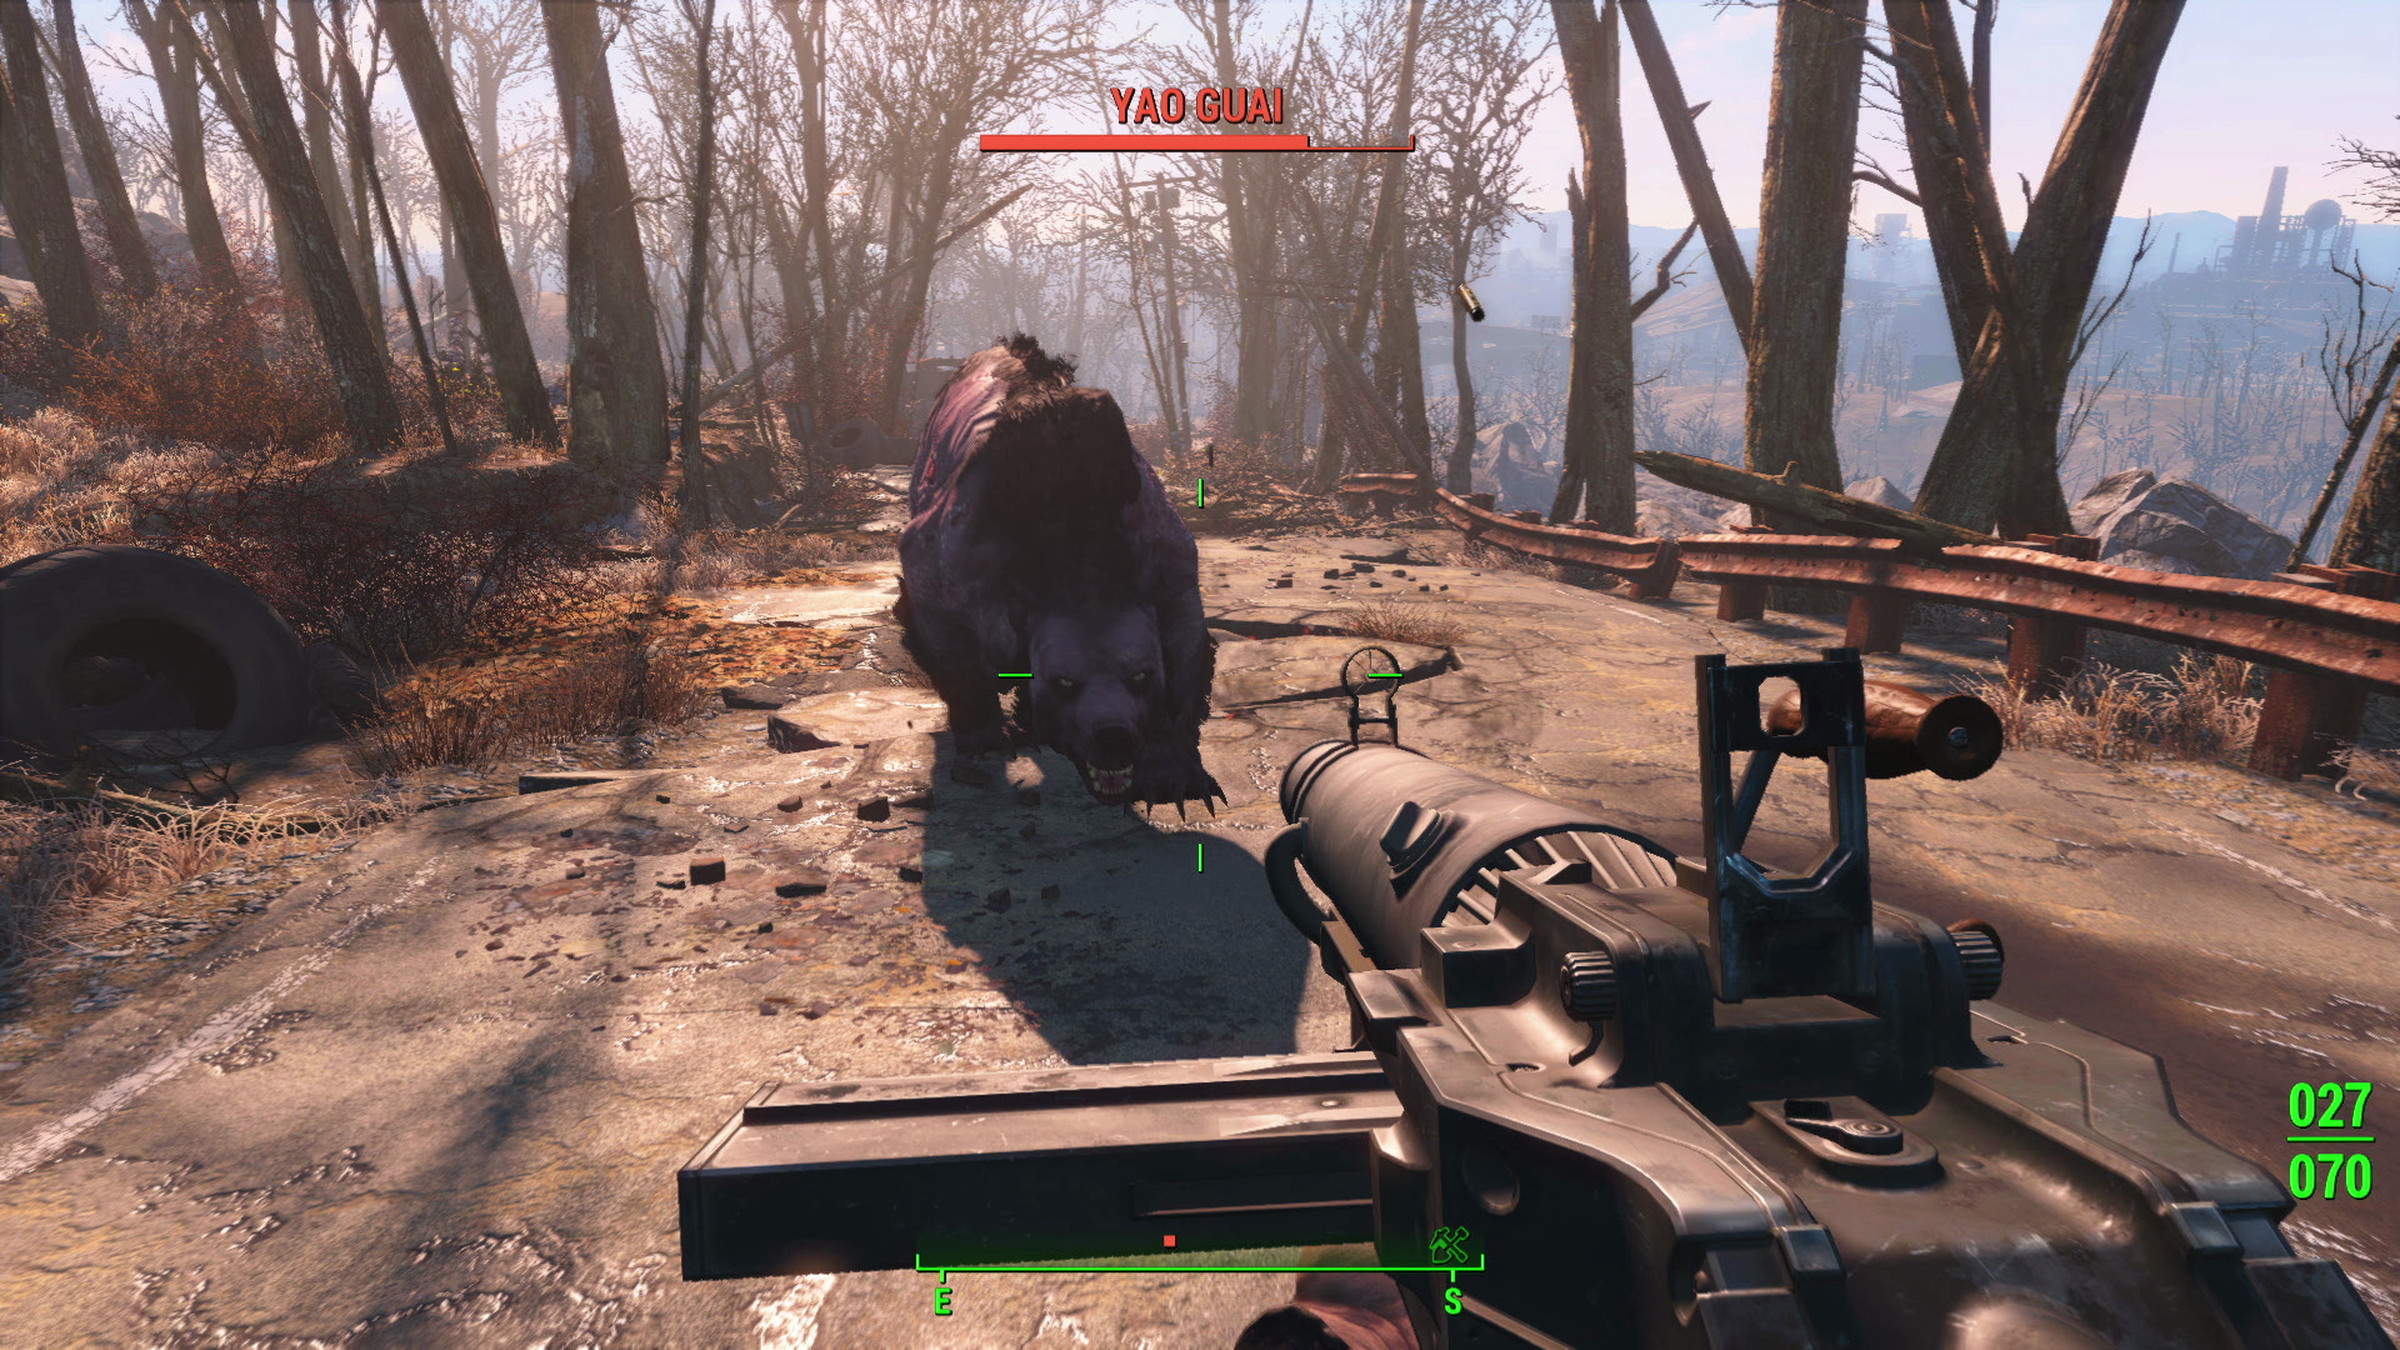 Fallout 4 screenshots